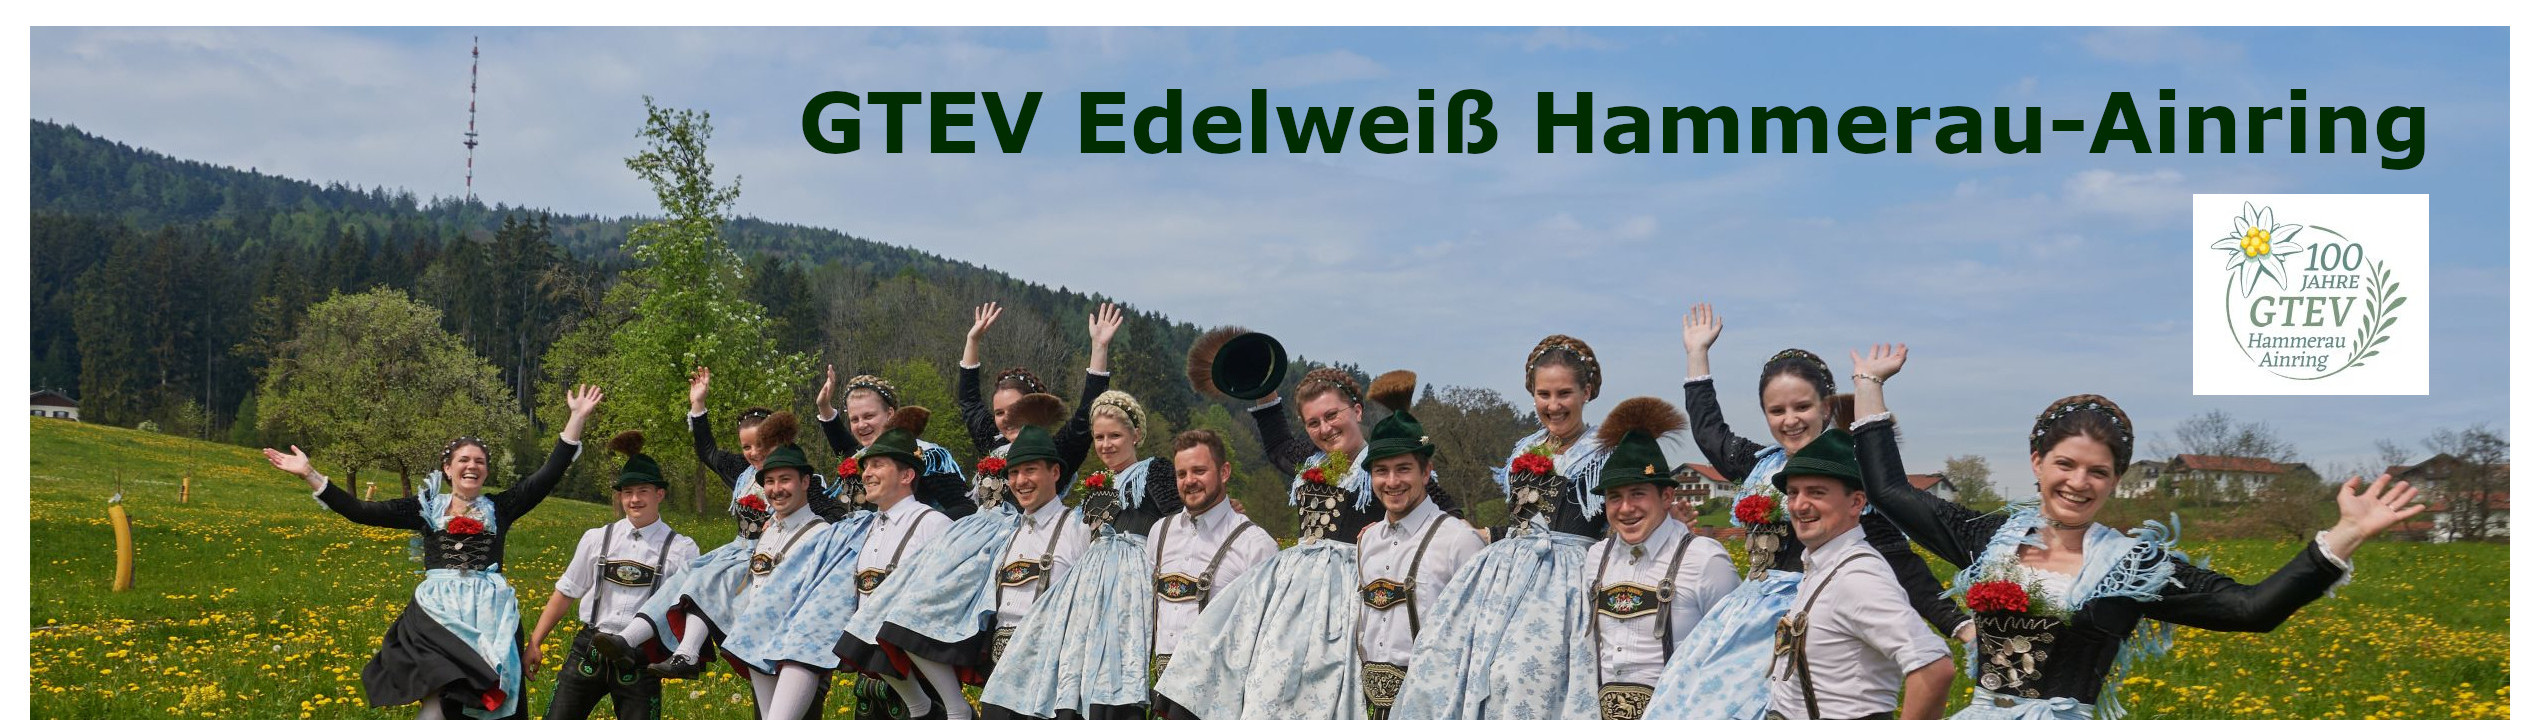 GTEV Edelweiß Hammerau-Ainring